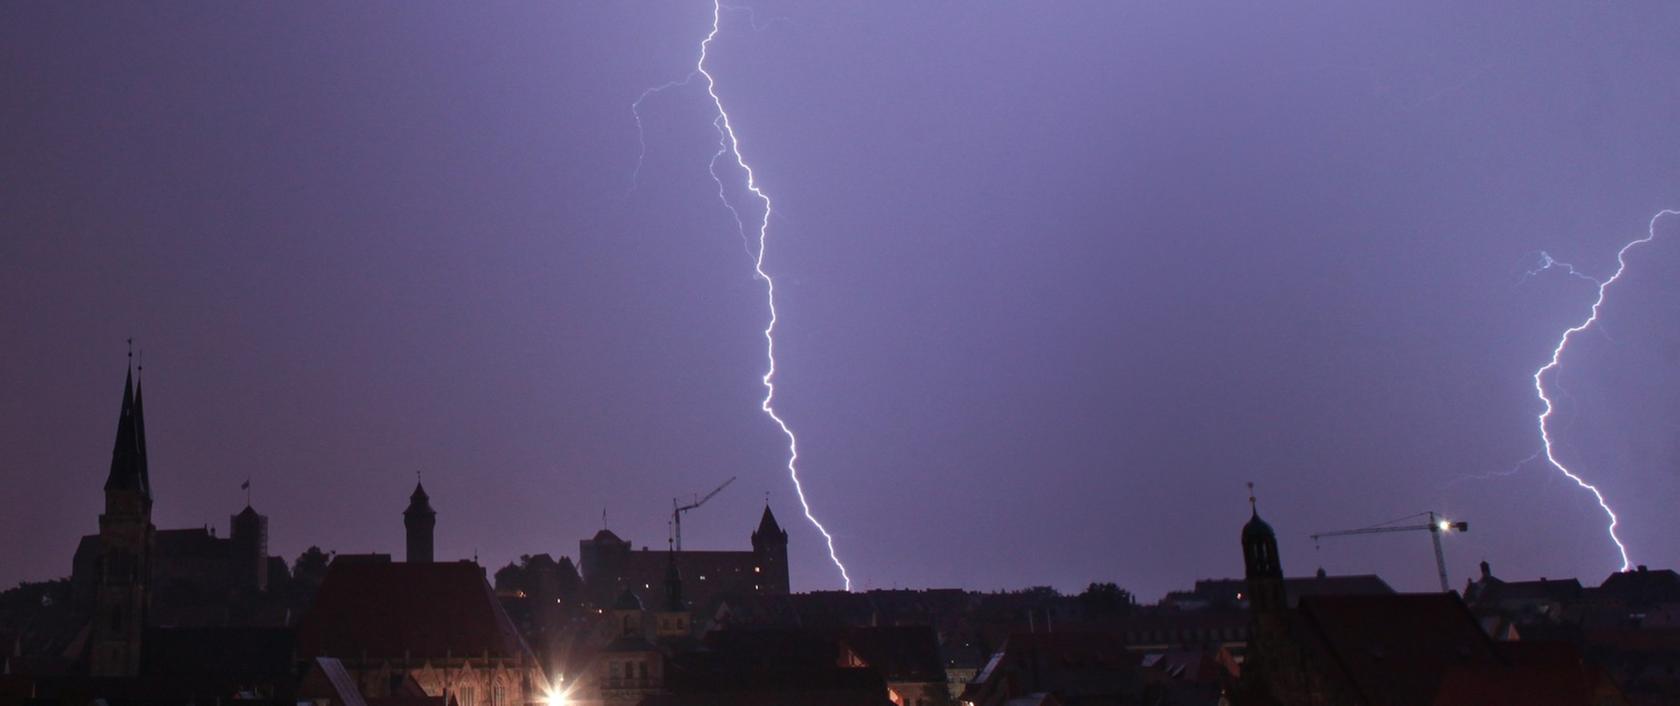 Wo es am häufigsten blitzt, verrät der Blitzatlas von Siemens in jedem Jahr. Nürnberg gehört für 2015 zu den blitzärmsten Orten Deutschlands.